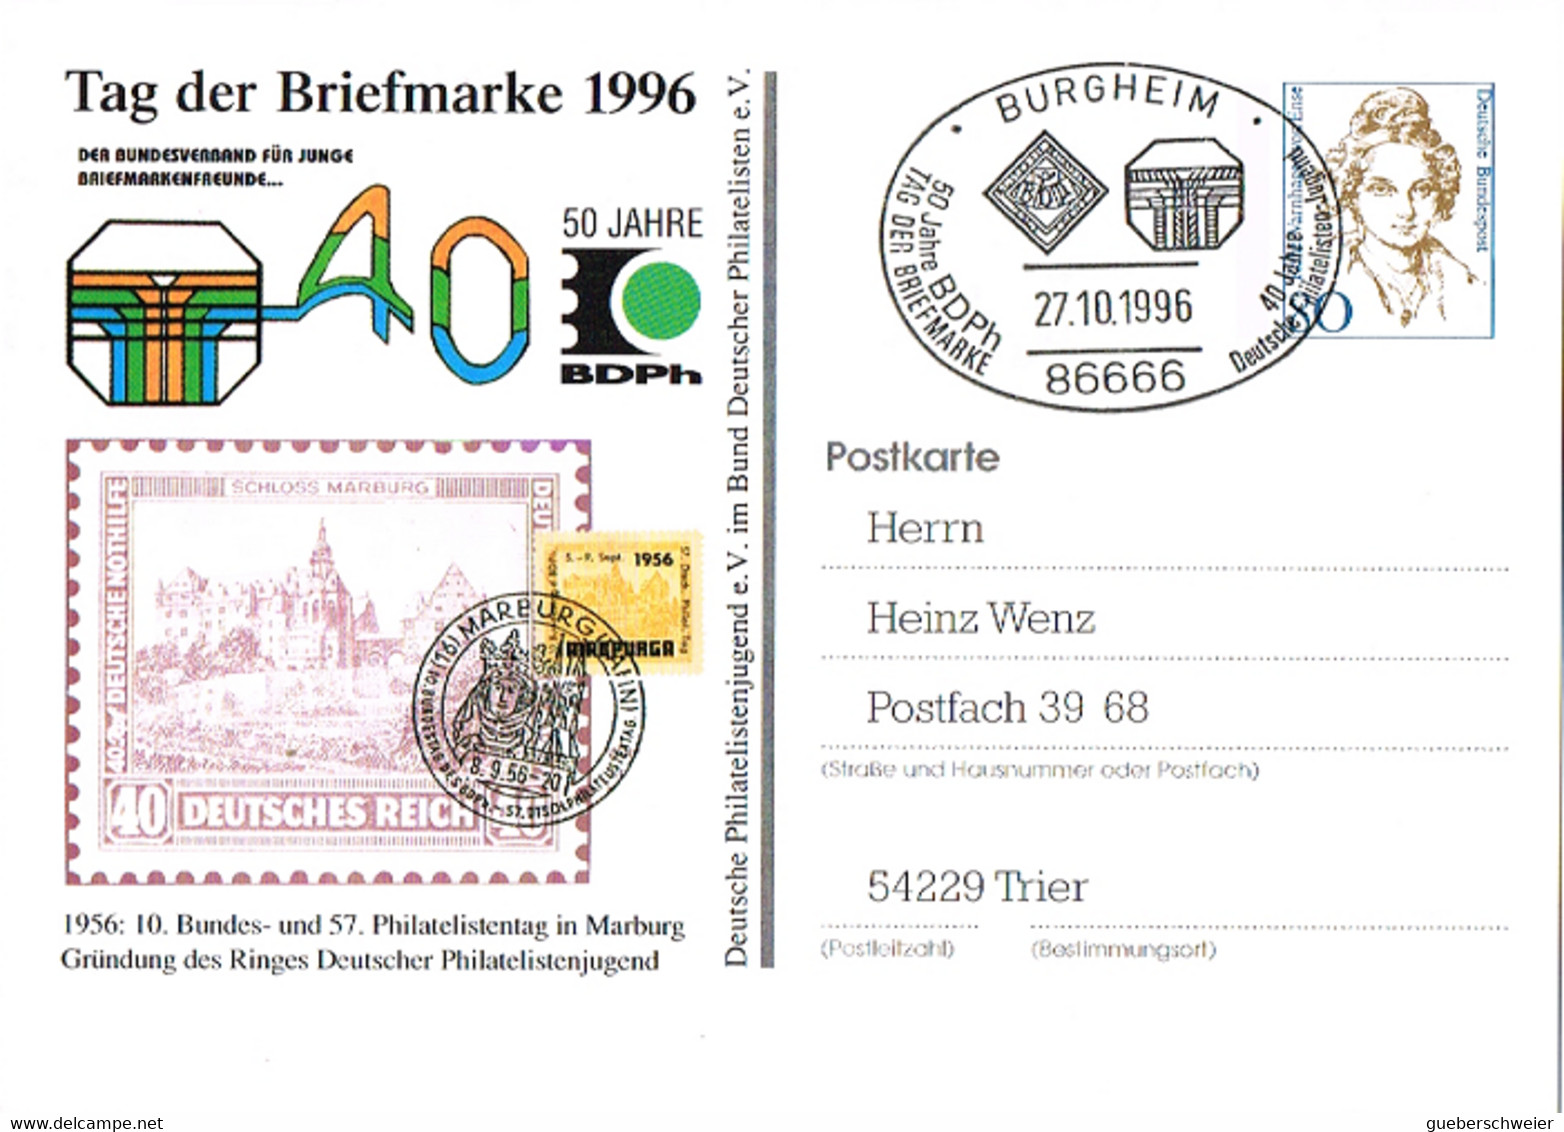 L-ALL-233 - ALLEMAGNE Entier Postal Journée Du Timbre Marburg Obl. Ill. Burgheim - Privatpostkarten - Gebraucht